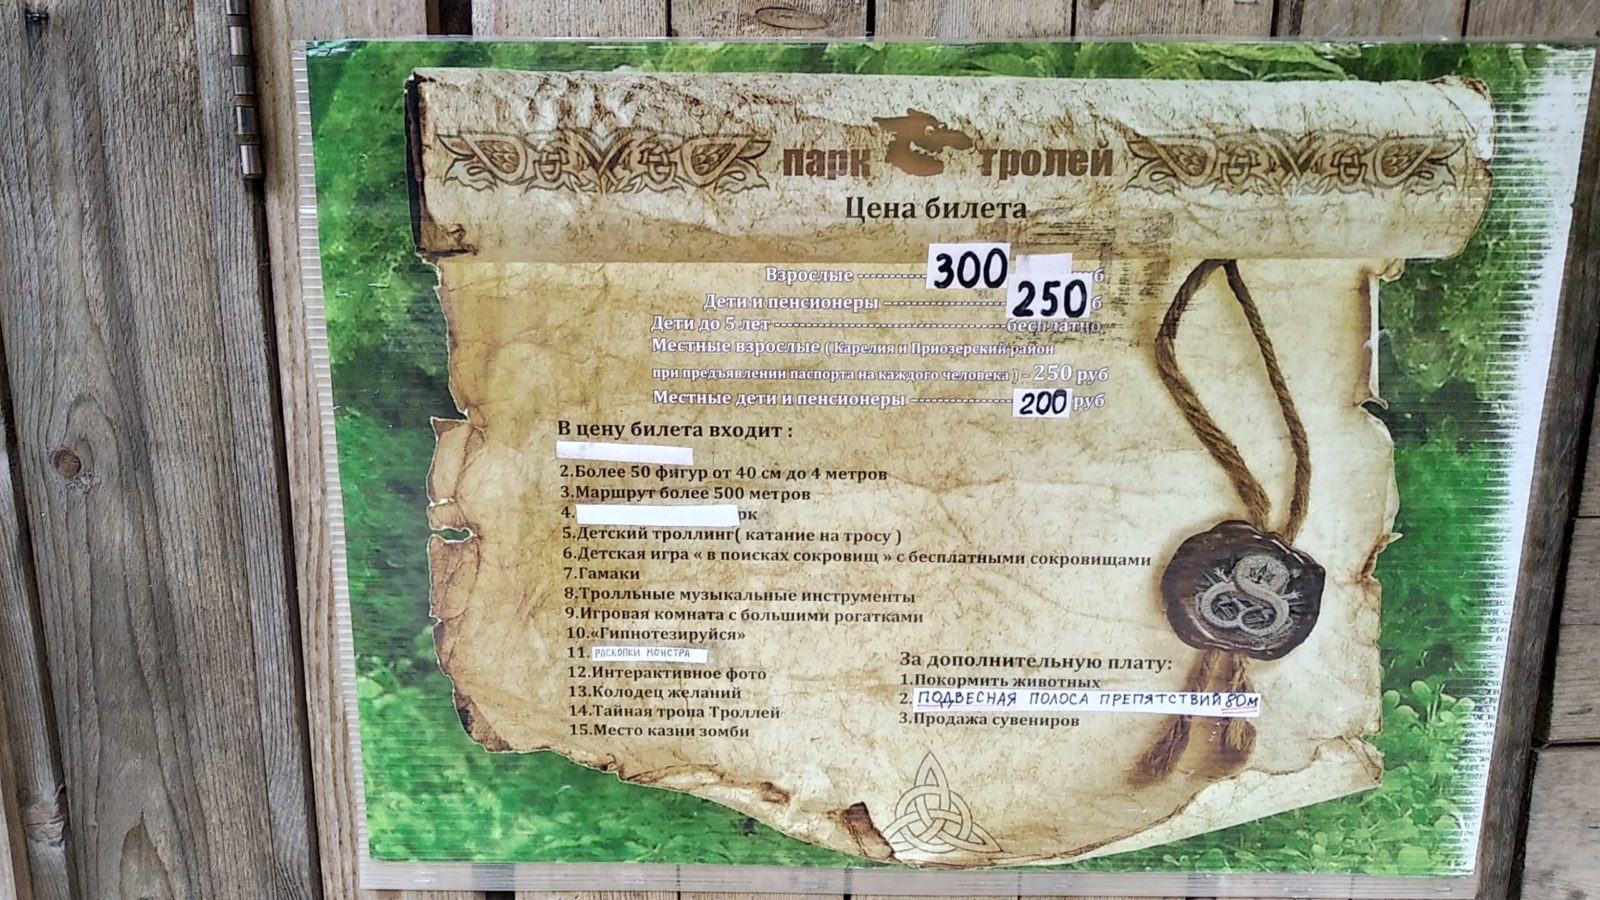 Стоимость входа для гостей 300 руб, детям 250руб. 